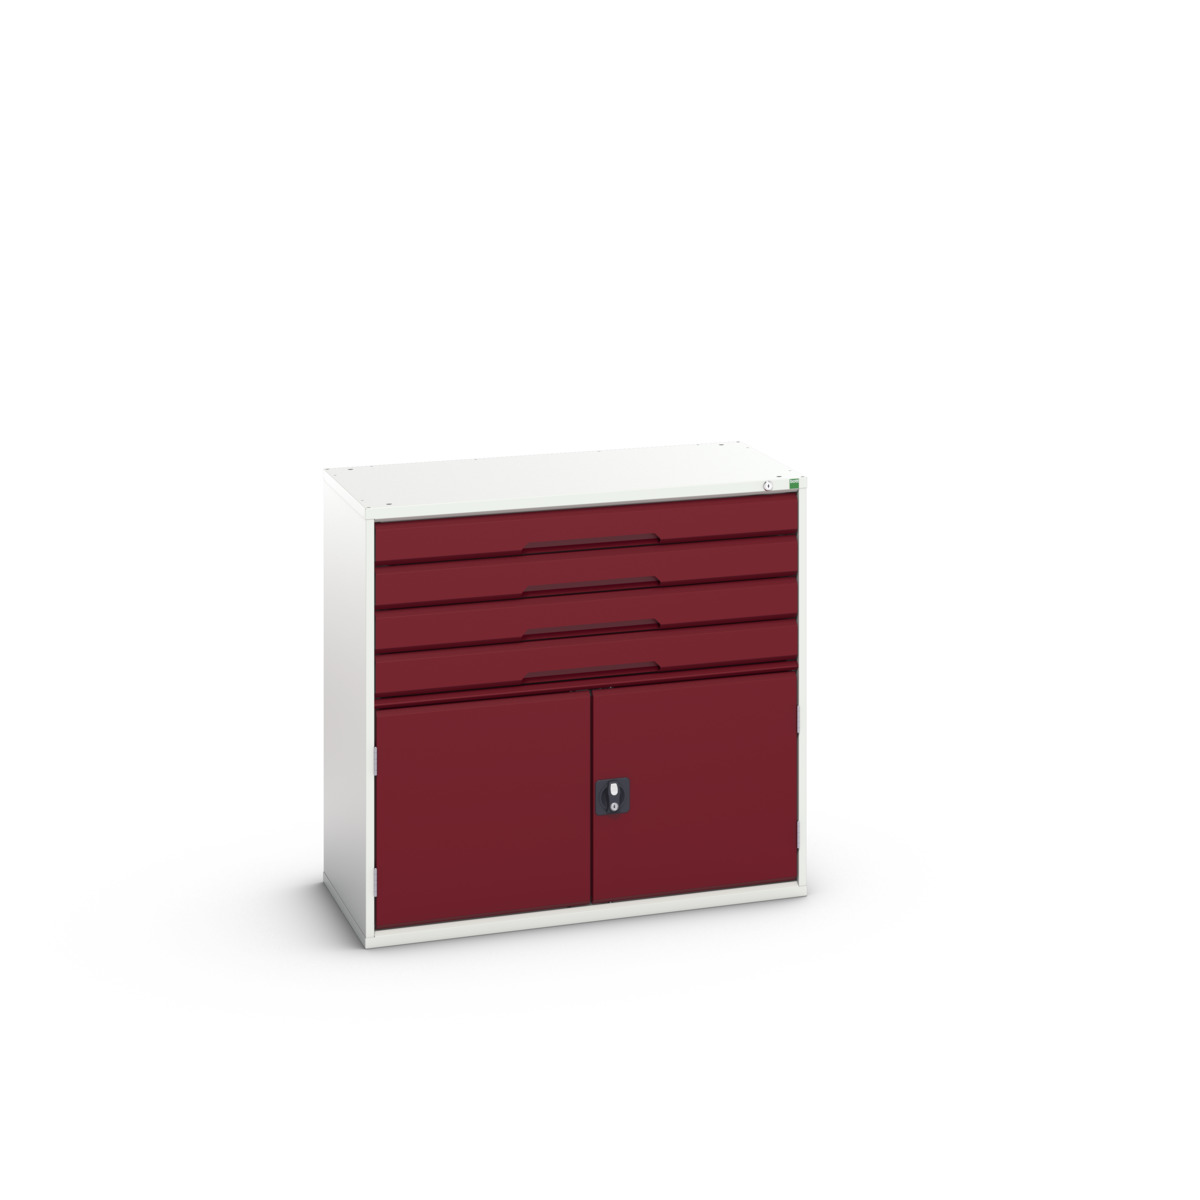 16925265.24 - verso drawer-door cabinet